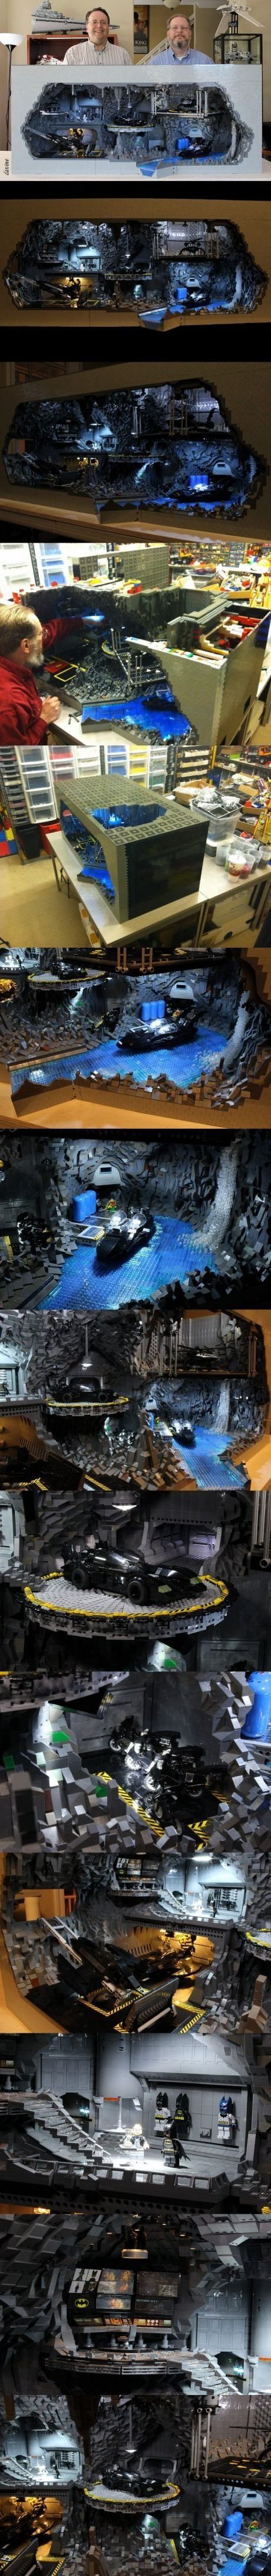 The Lego Bat Cave.